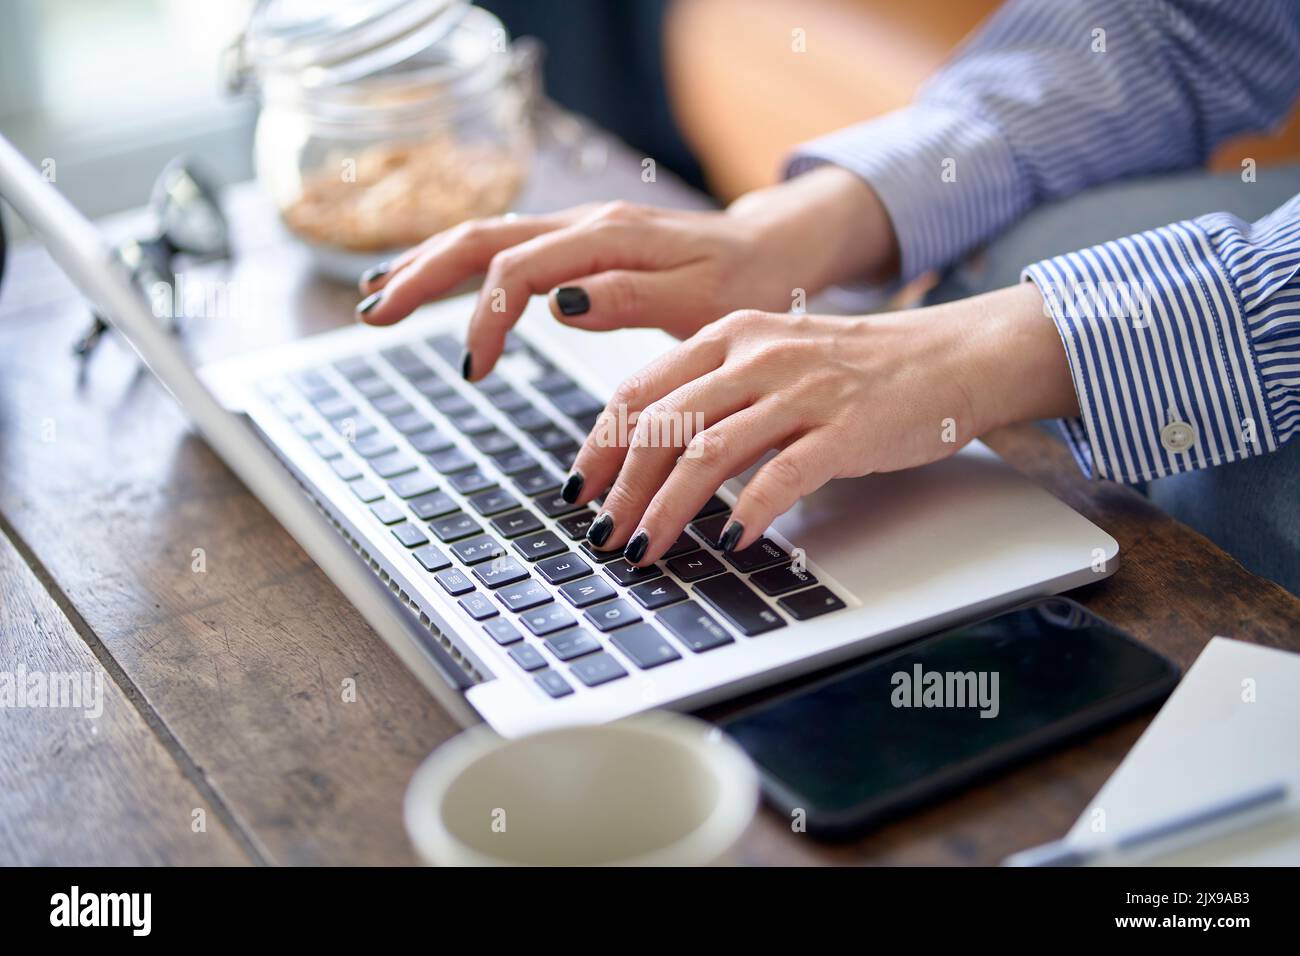 primer plano de manos y dedos de una mujer asiática que trabaja desde casa utilizando un ordenador portátil Foto de stock